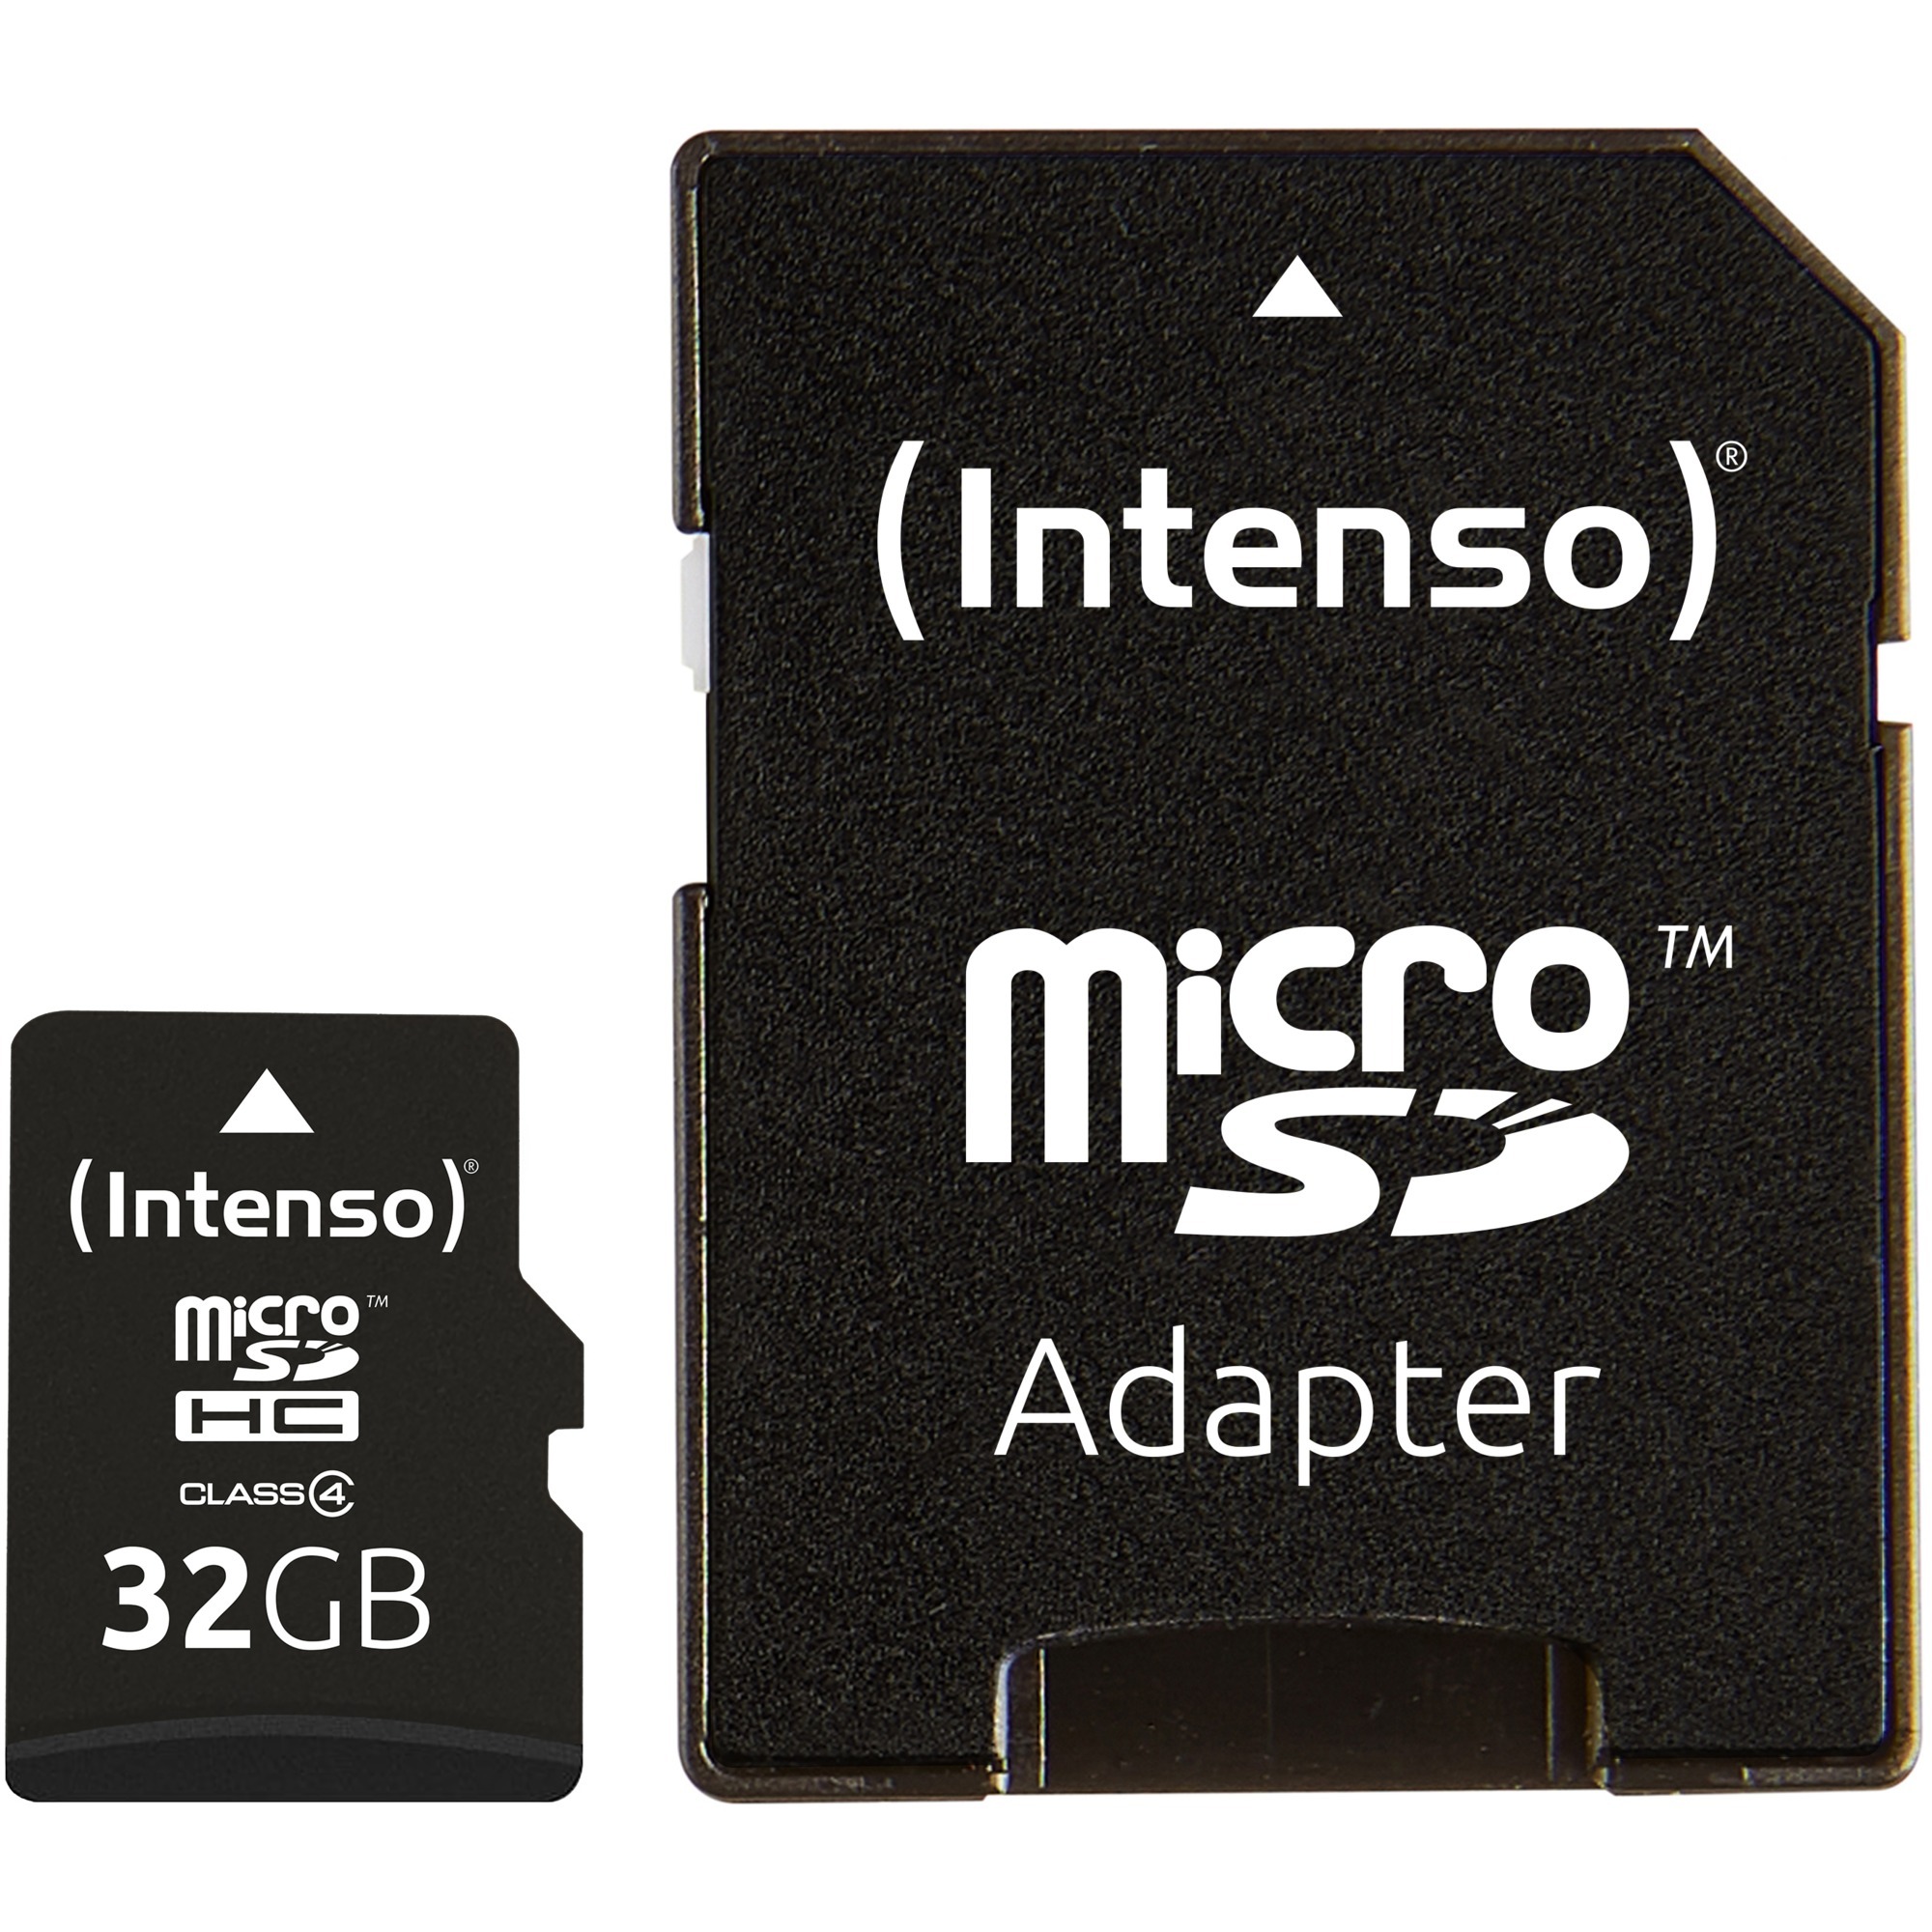 Image of Alternate - microSDHC 32 GB, Speicherkarte online einkaufen bei Alternate